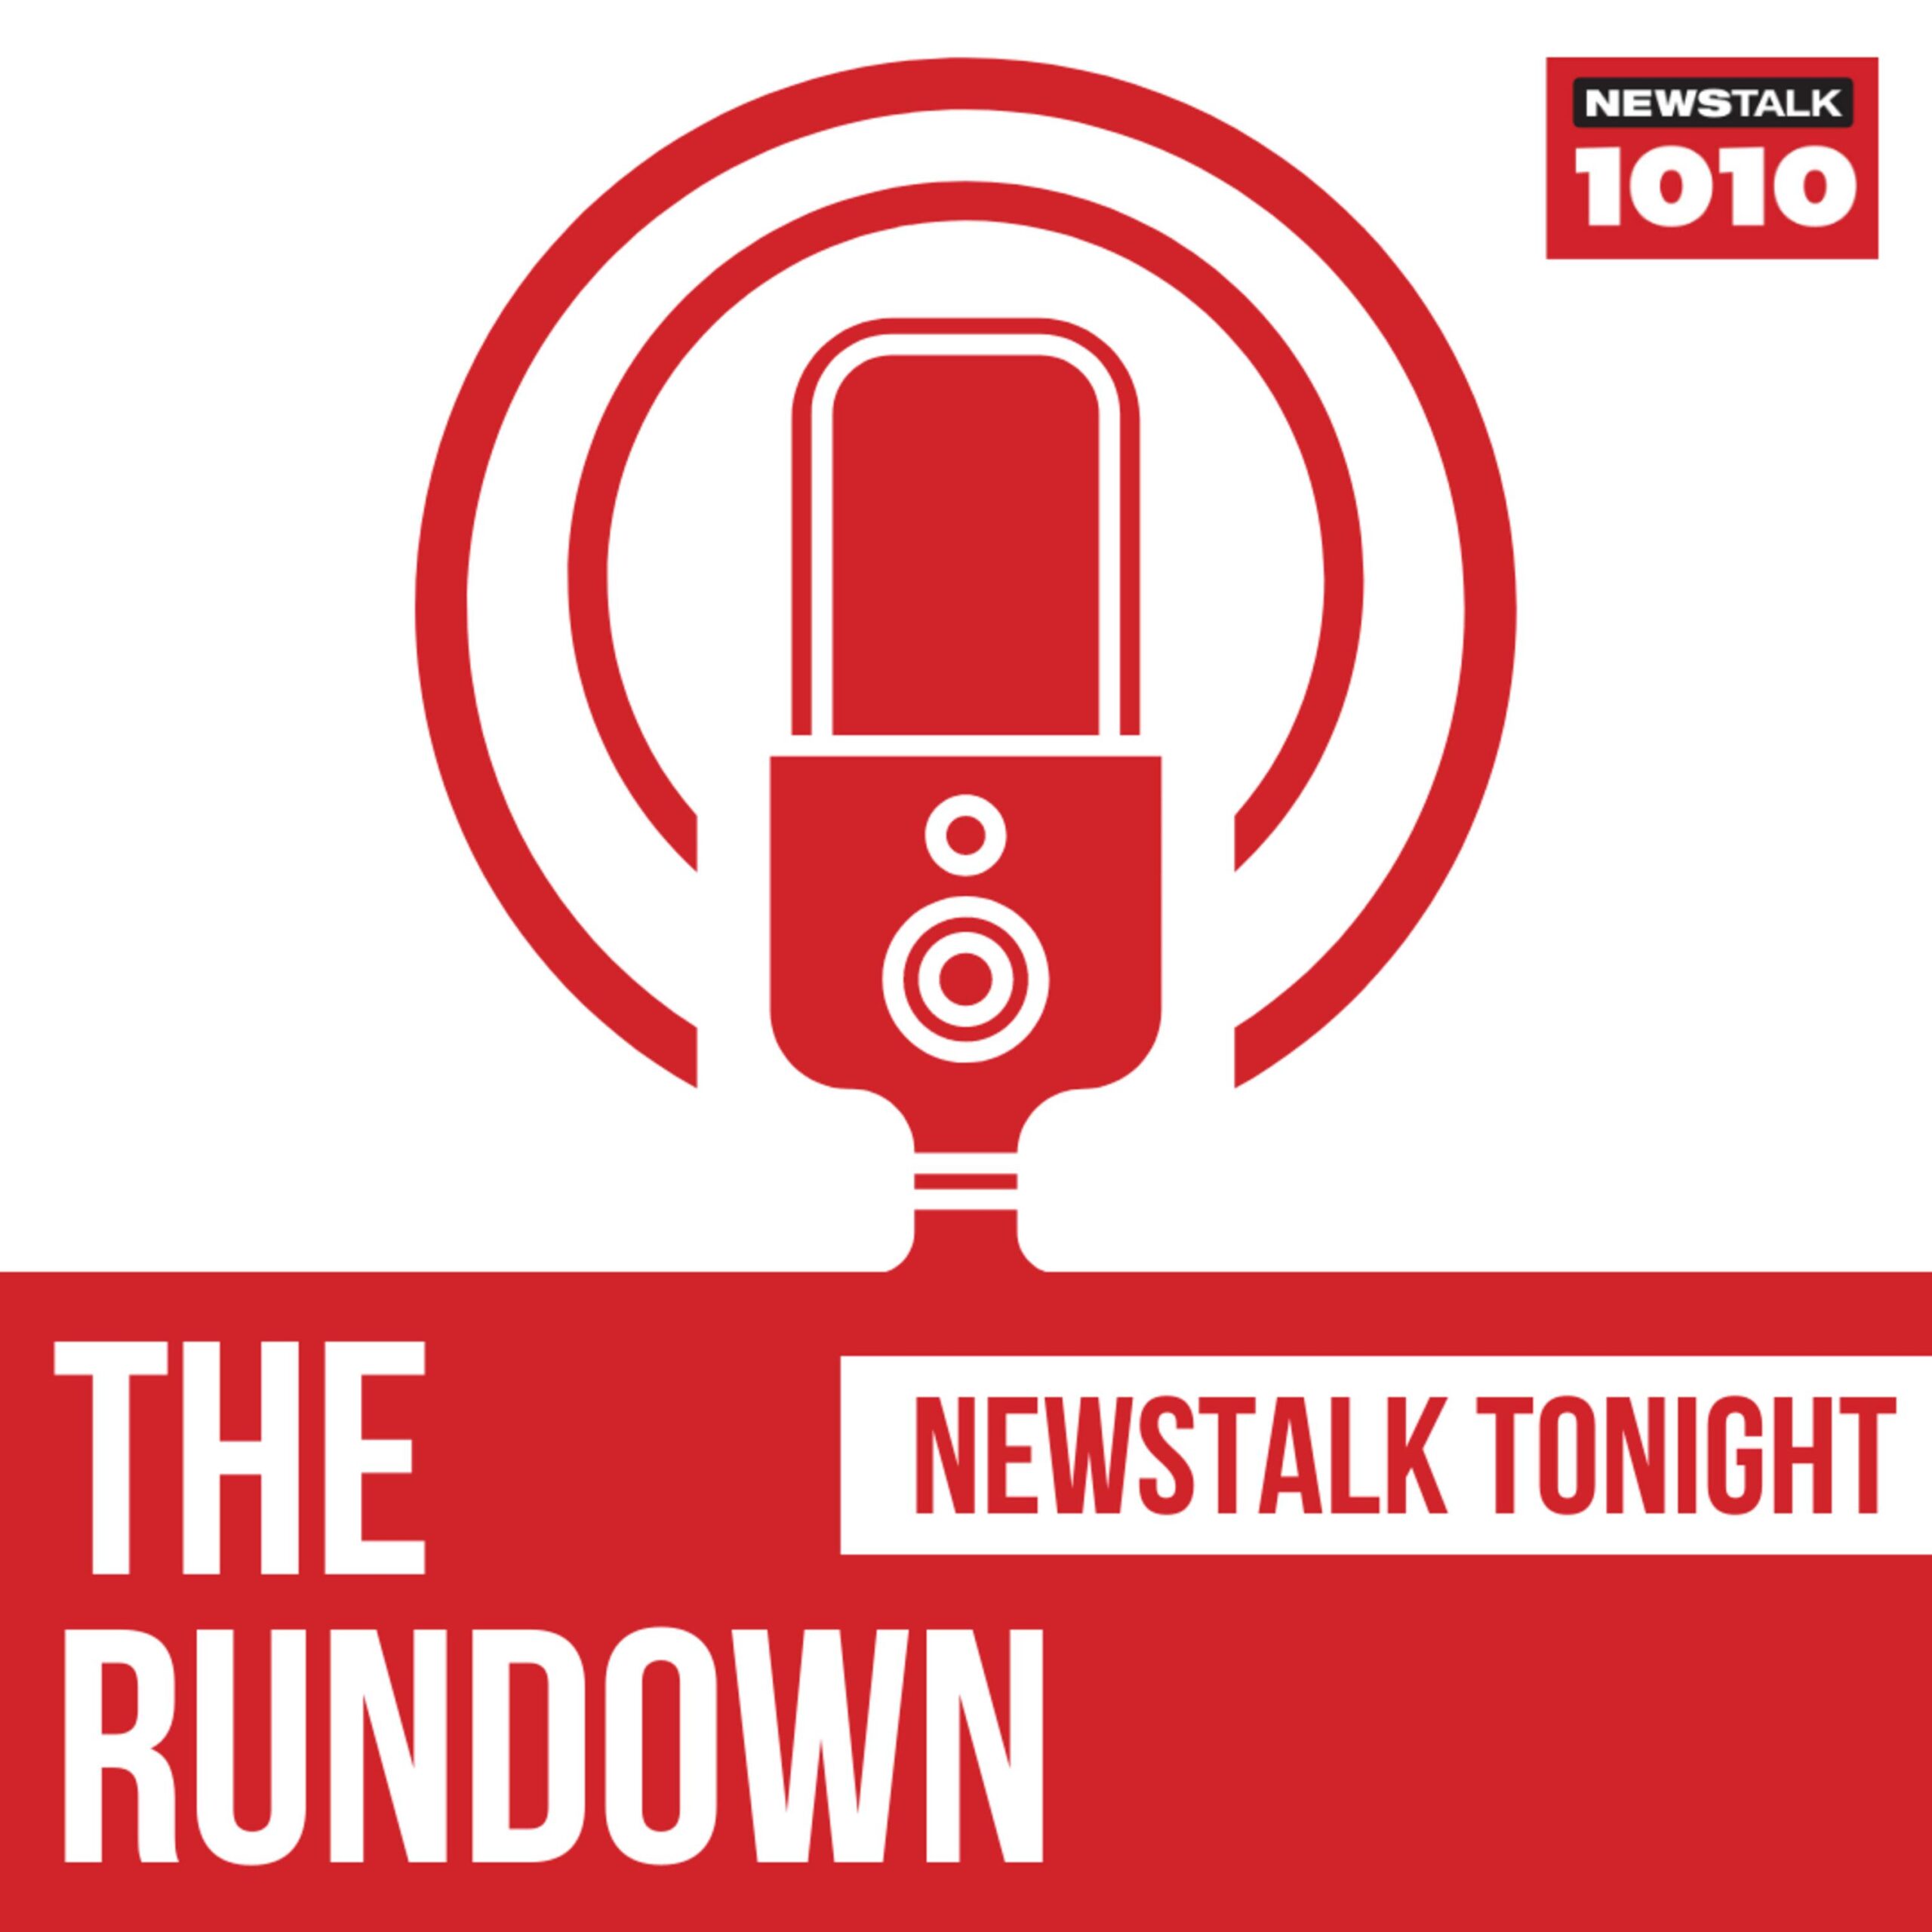 CFRB 1010 - Newstalk Tonight - The Rundown